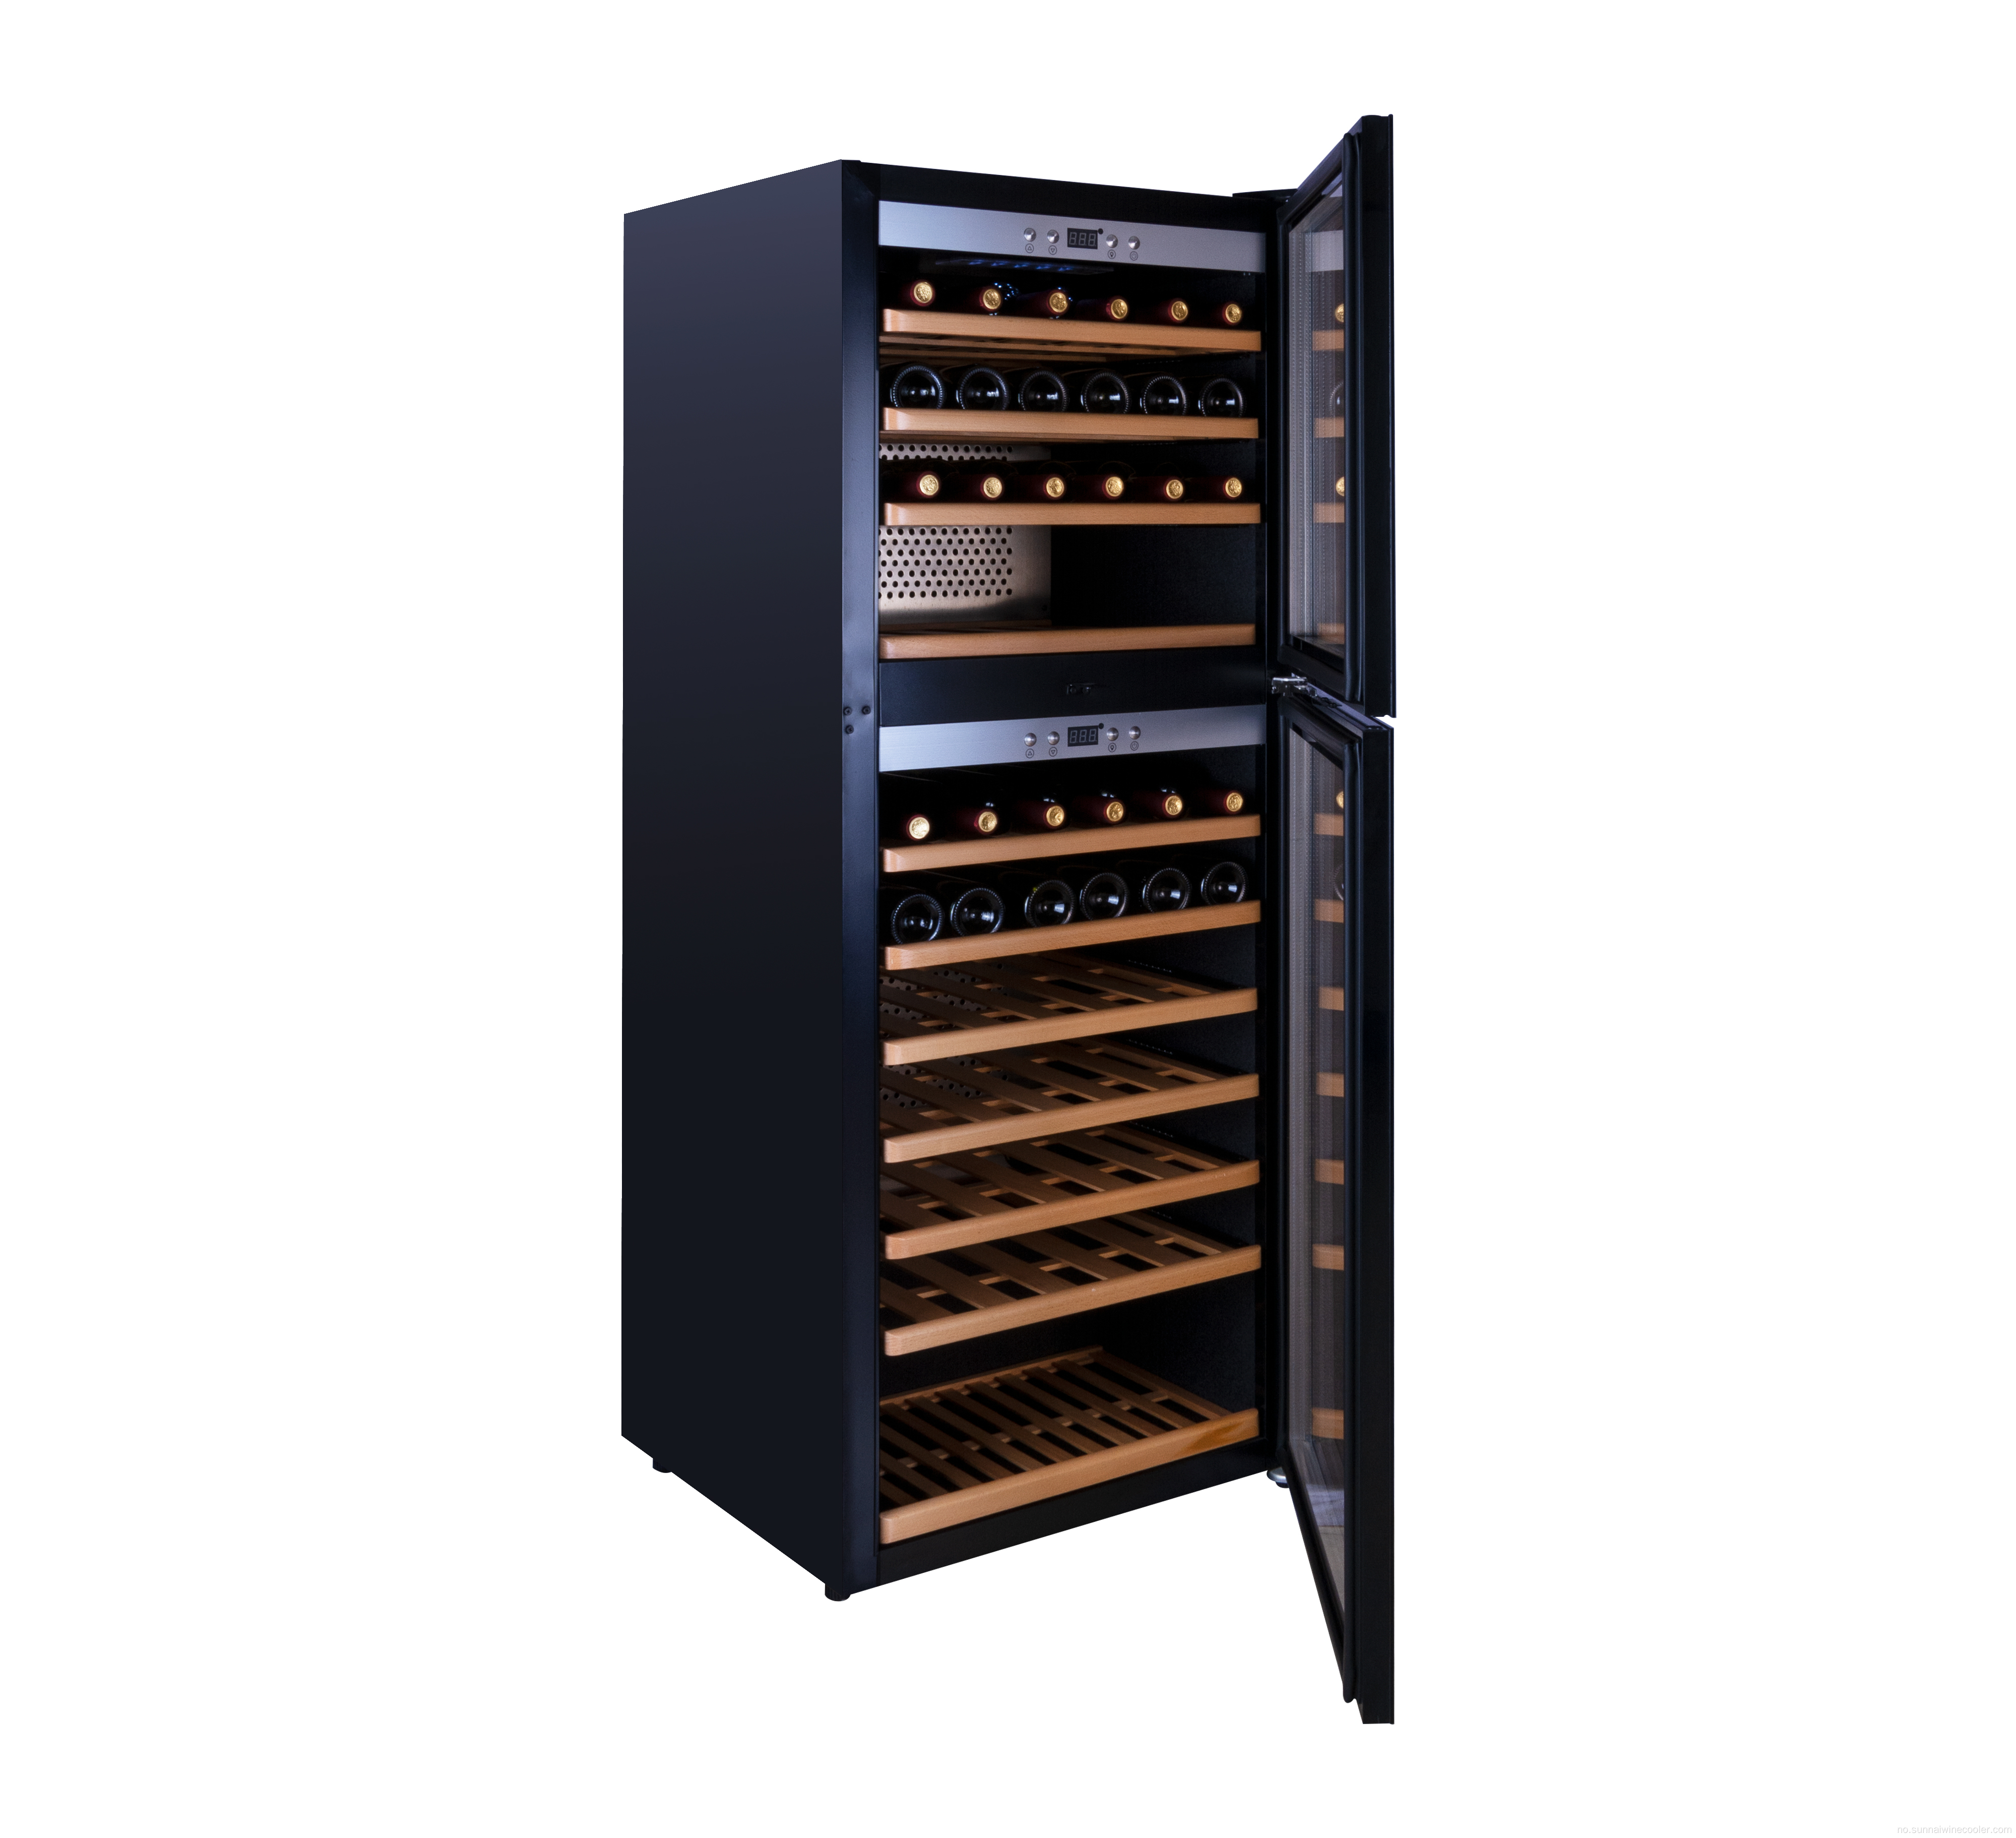 Kompressor vinkjeller kjøleskap Vin kjøligere kjøler